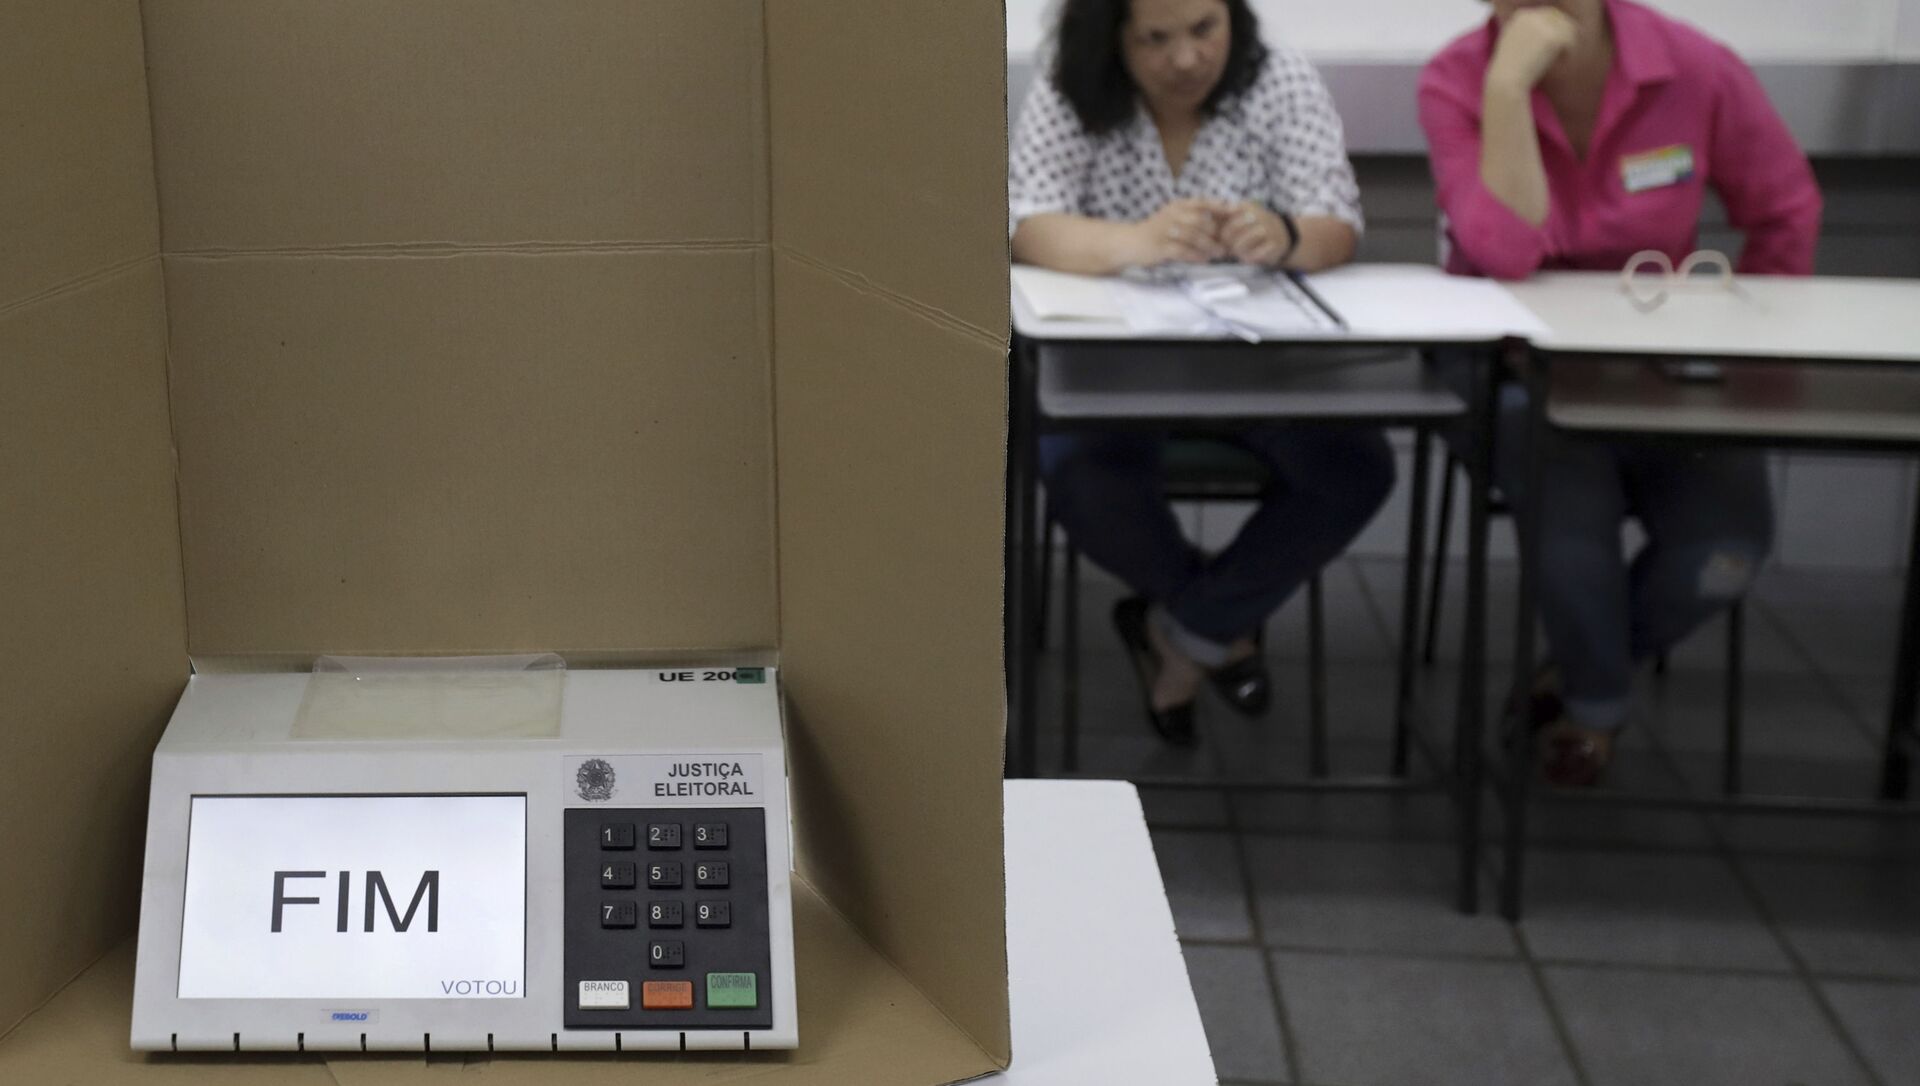 Em Brasília, uma urna eletrônica mostra a palavra Fim em uma seção eleitoral dois mesários ao fundo, em 28 de outubro de 2018. - Sputnik Brasil, 1920, 18.05.2021